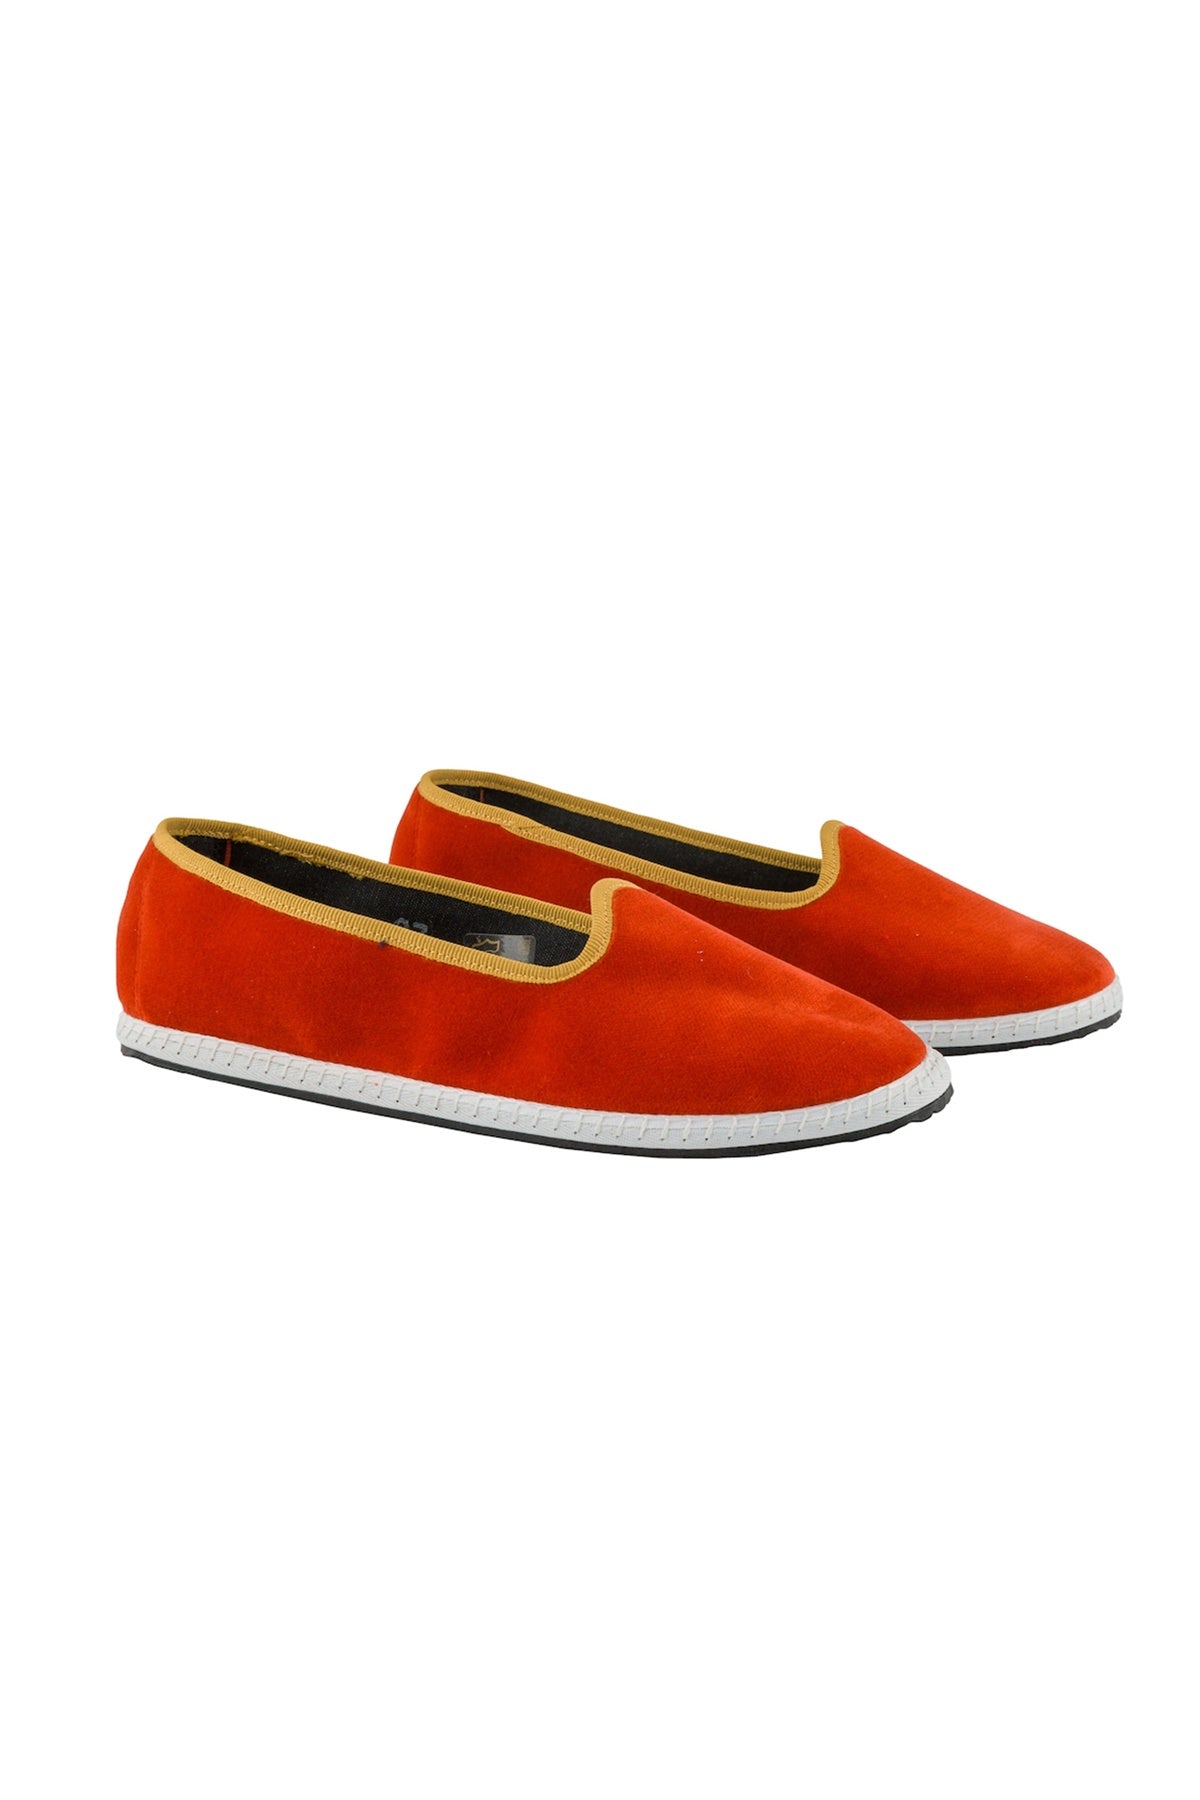 Venetian Velvet Slippers - Orange